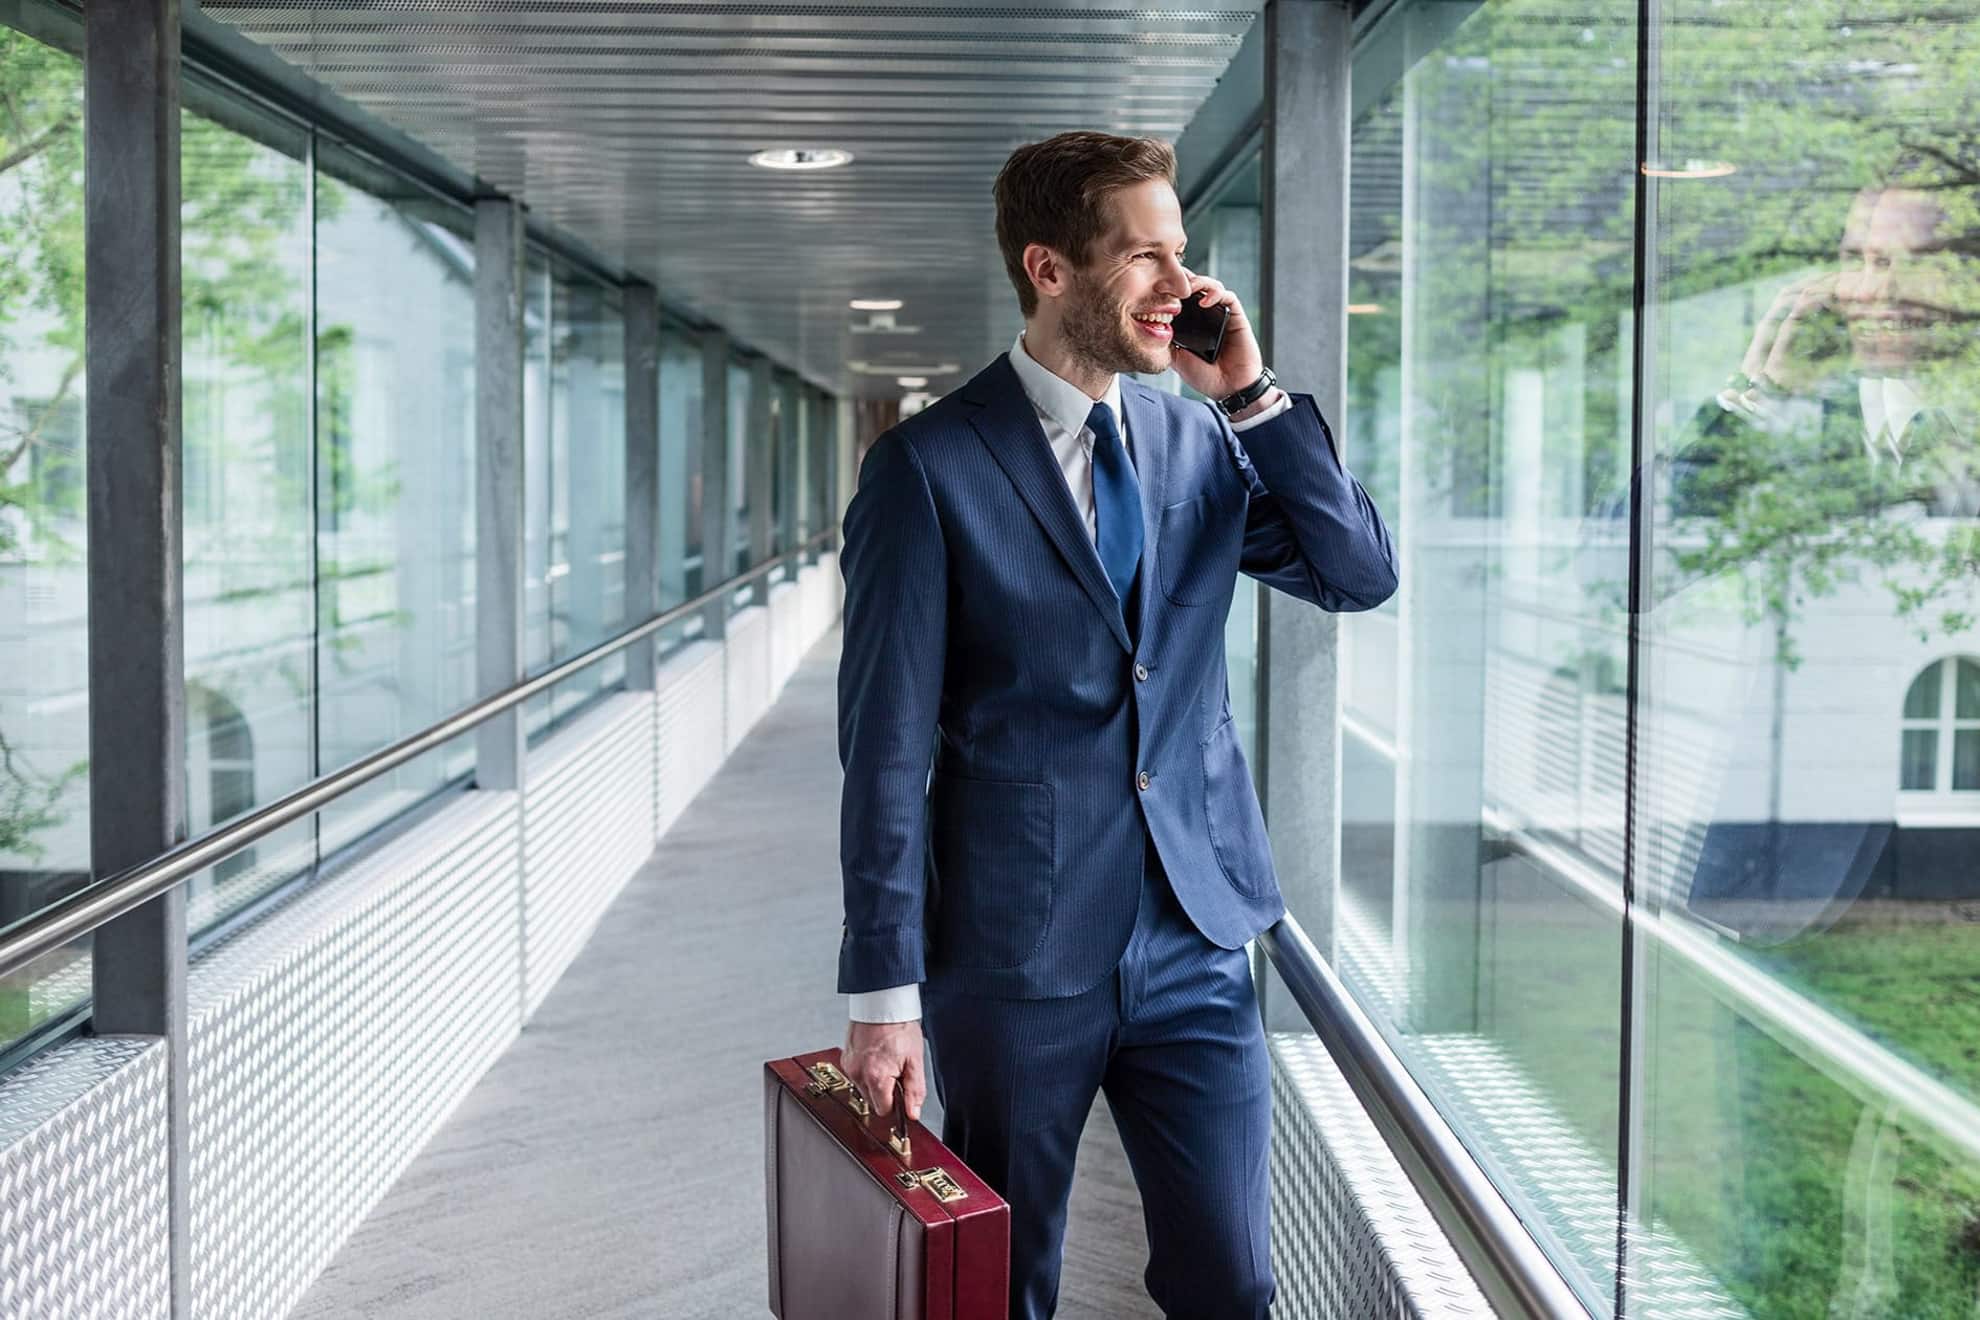 Moderner, lachender junger Business Mann im blauen Anzug der einen Flur mit Glaswänden entlang läuft während der telefoniert und einen Koffer trägt.